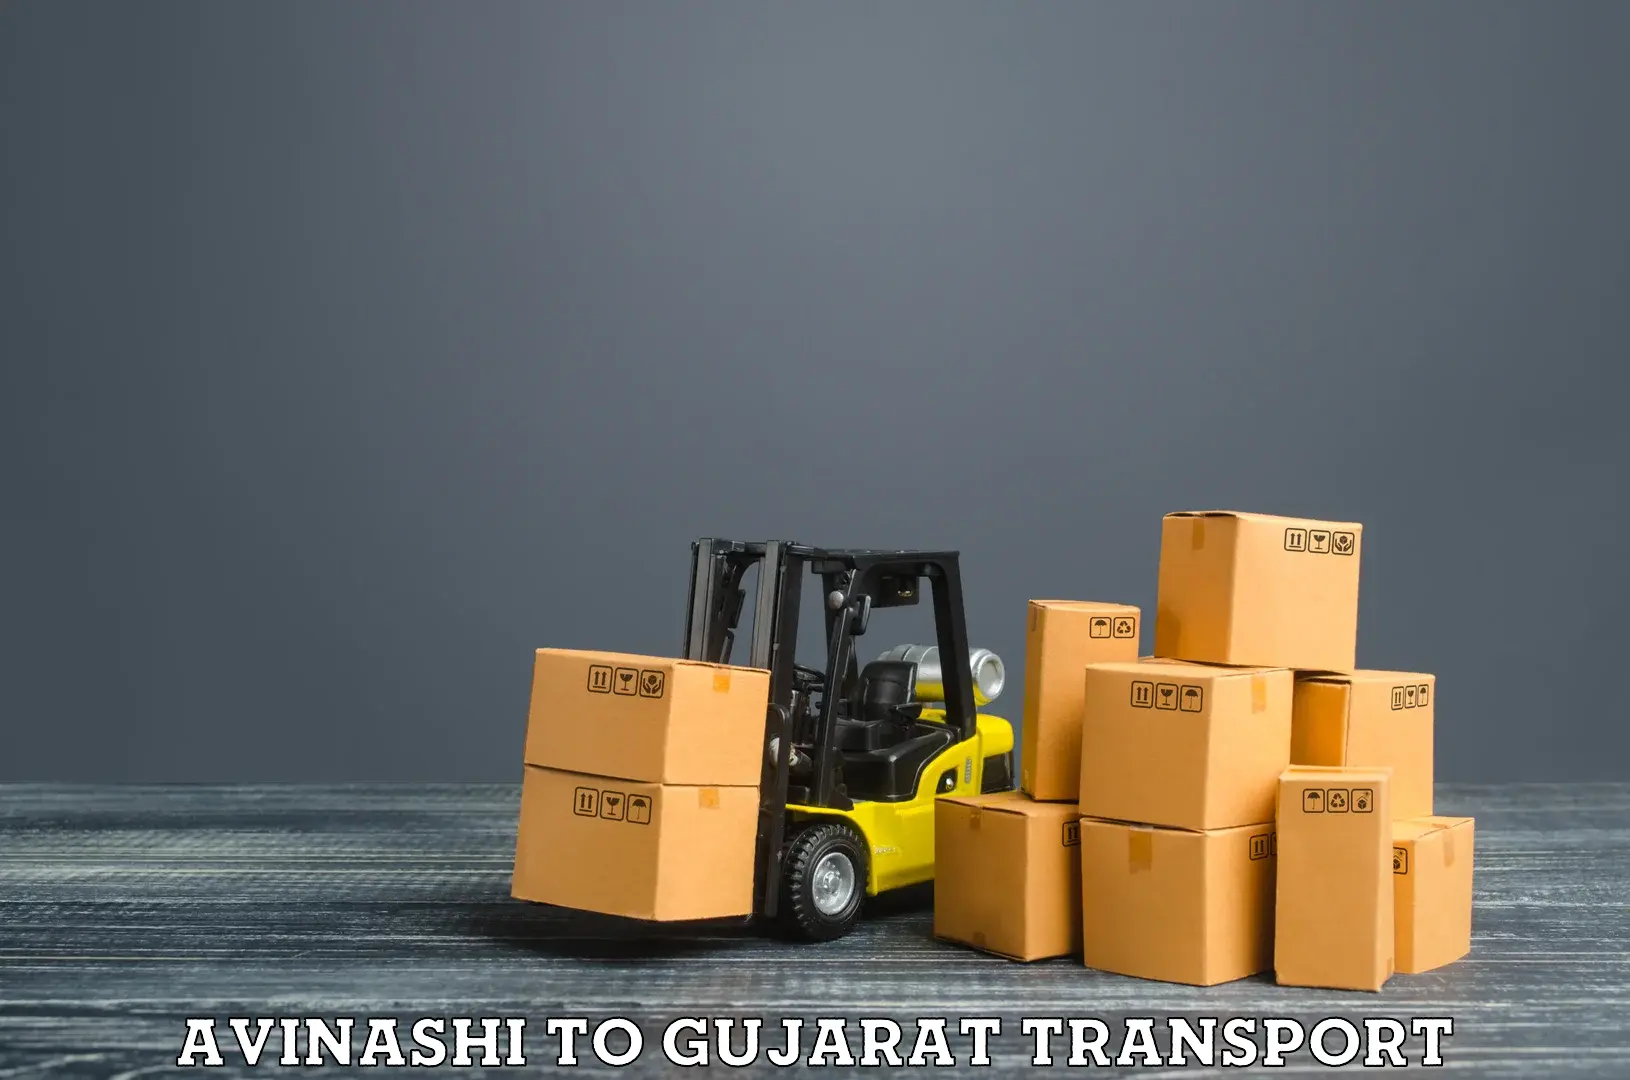 Furniture transport service Avinashi to Naliya